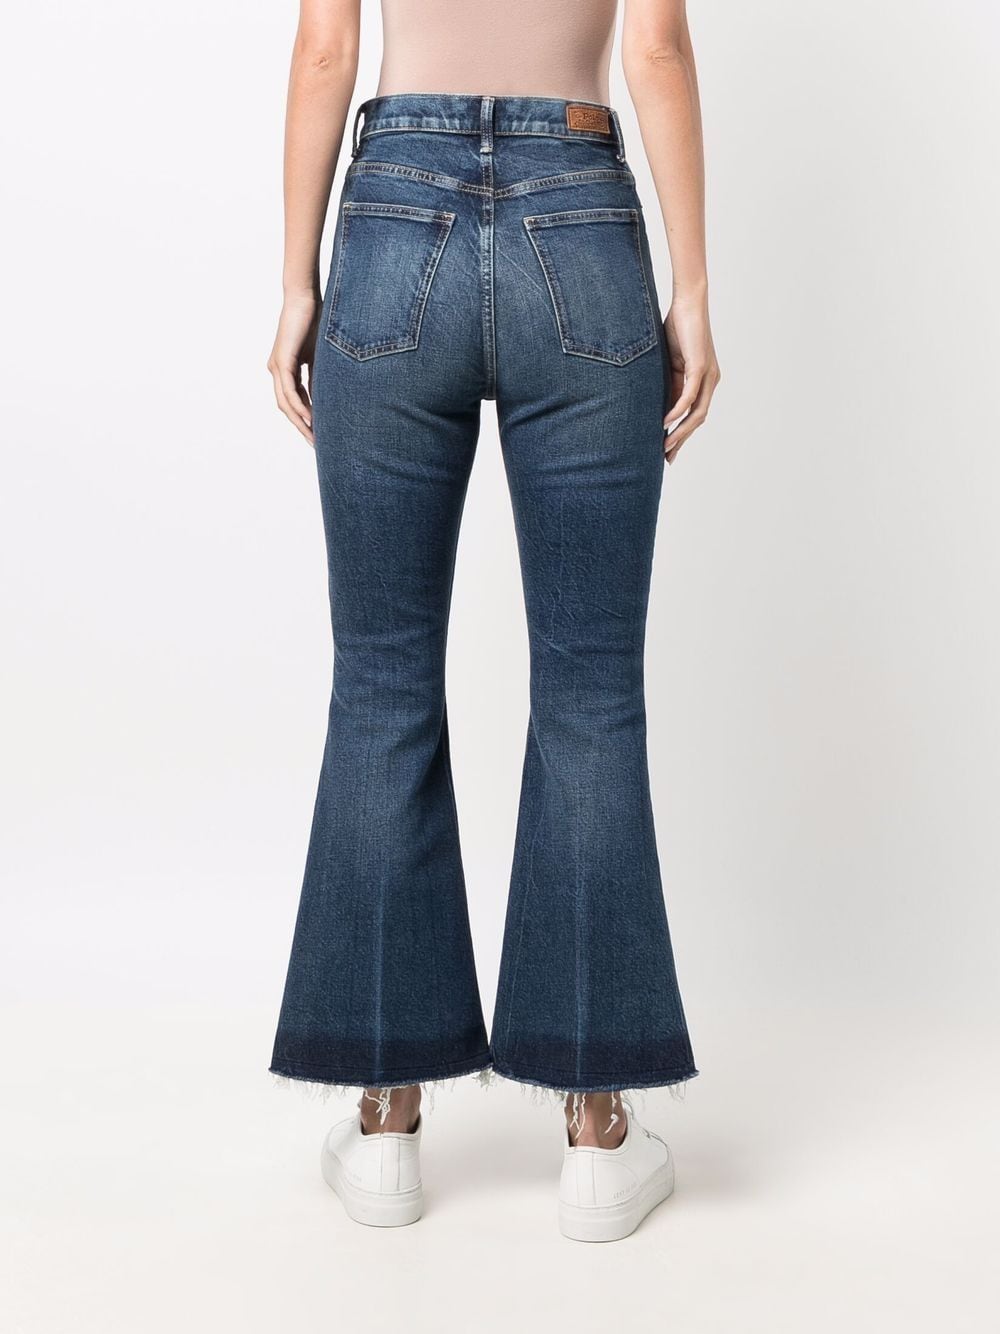 фото Polo ralph lauren расклешенные джинсы с завышенной талией